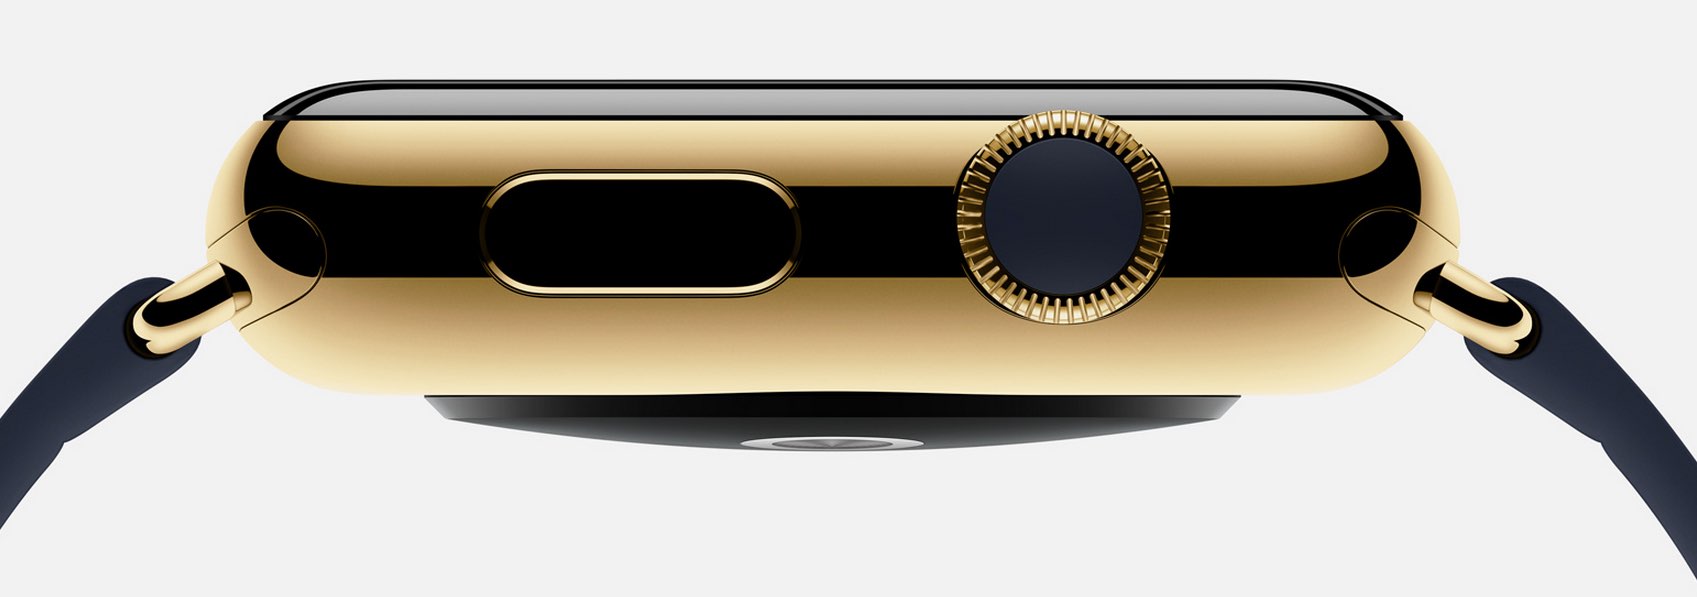 Goldene Apple Watch stellt Apple Stores vor neue Herausforderungen 6